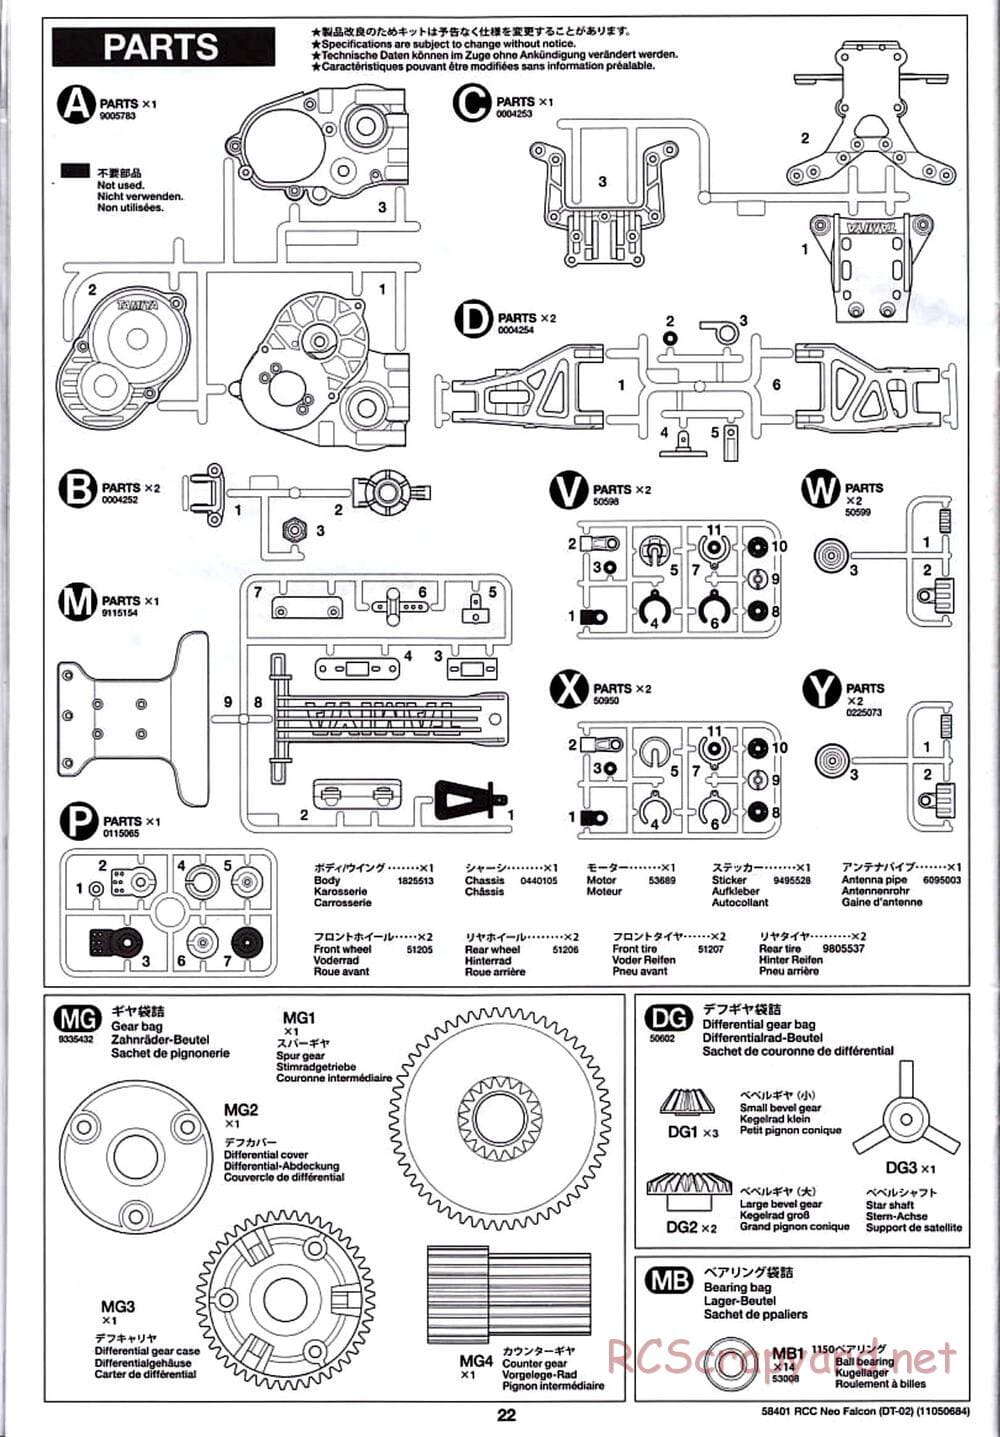 Tamiya - Neo Falcon Chassis - Manual - Page 22